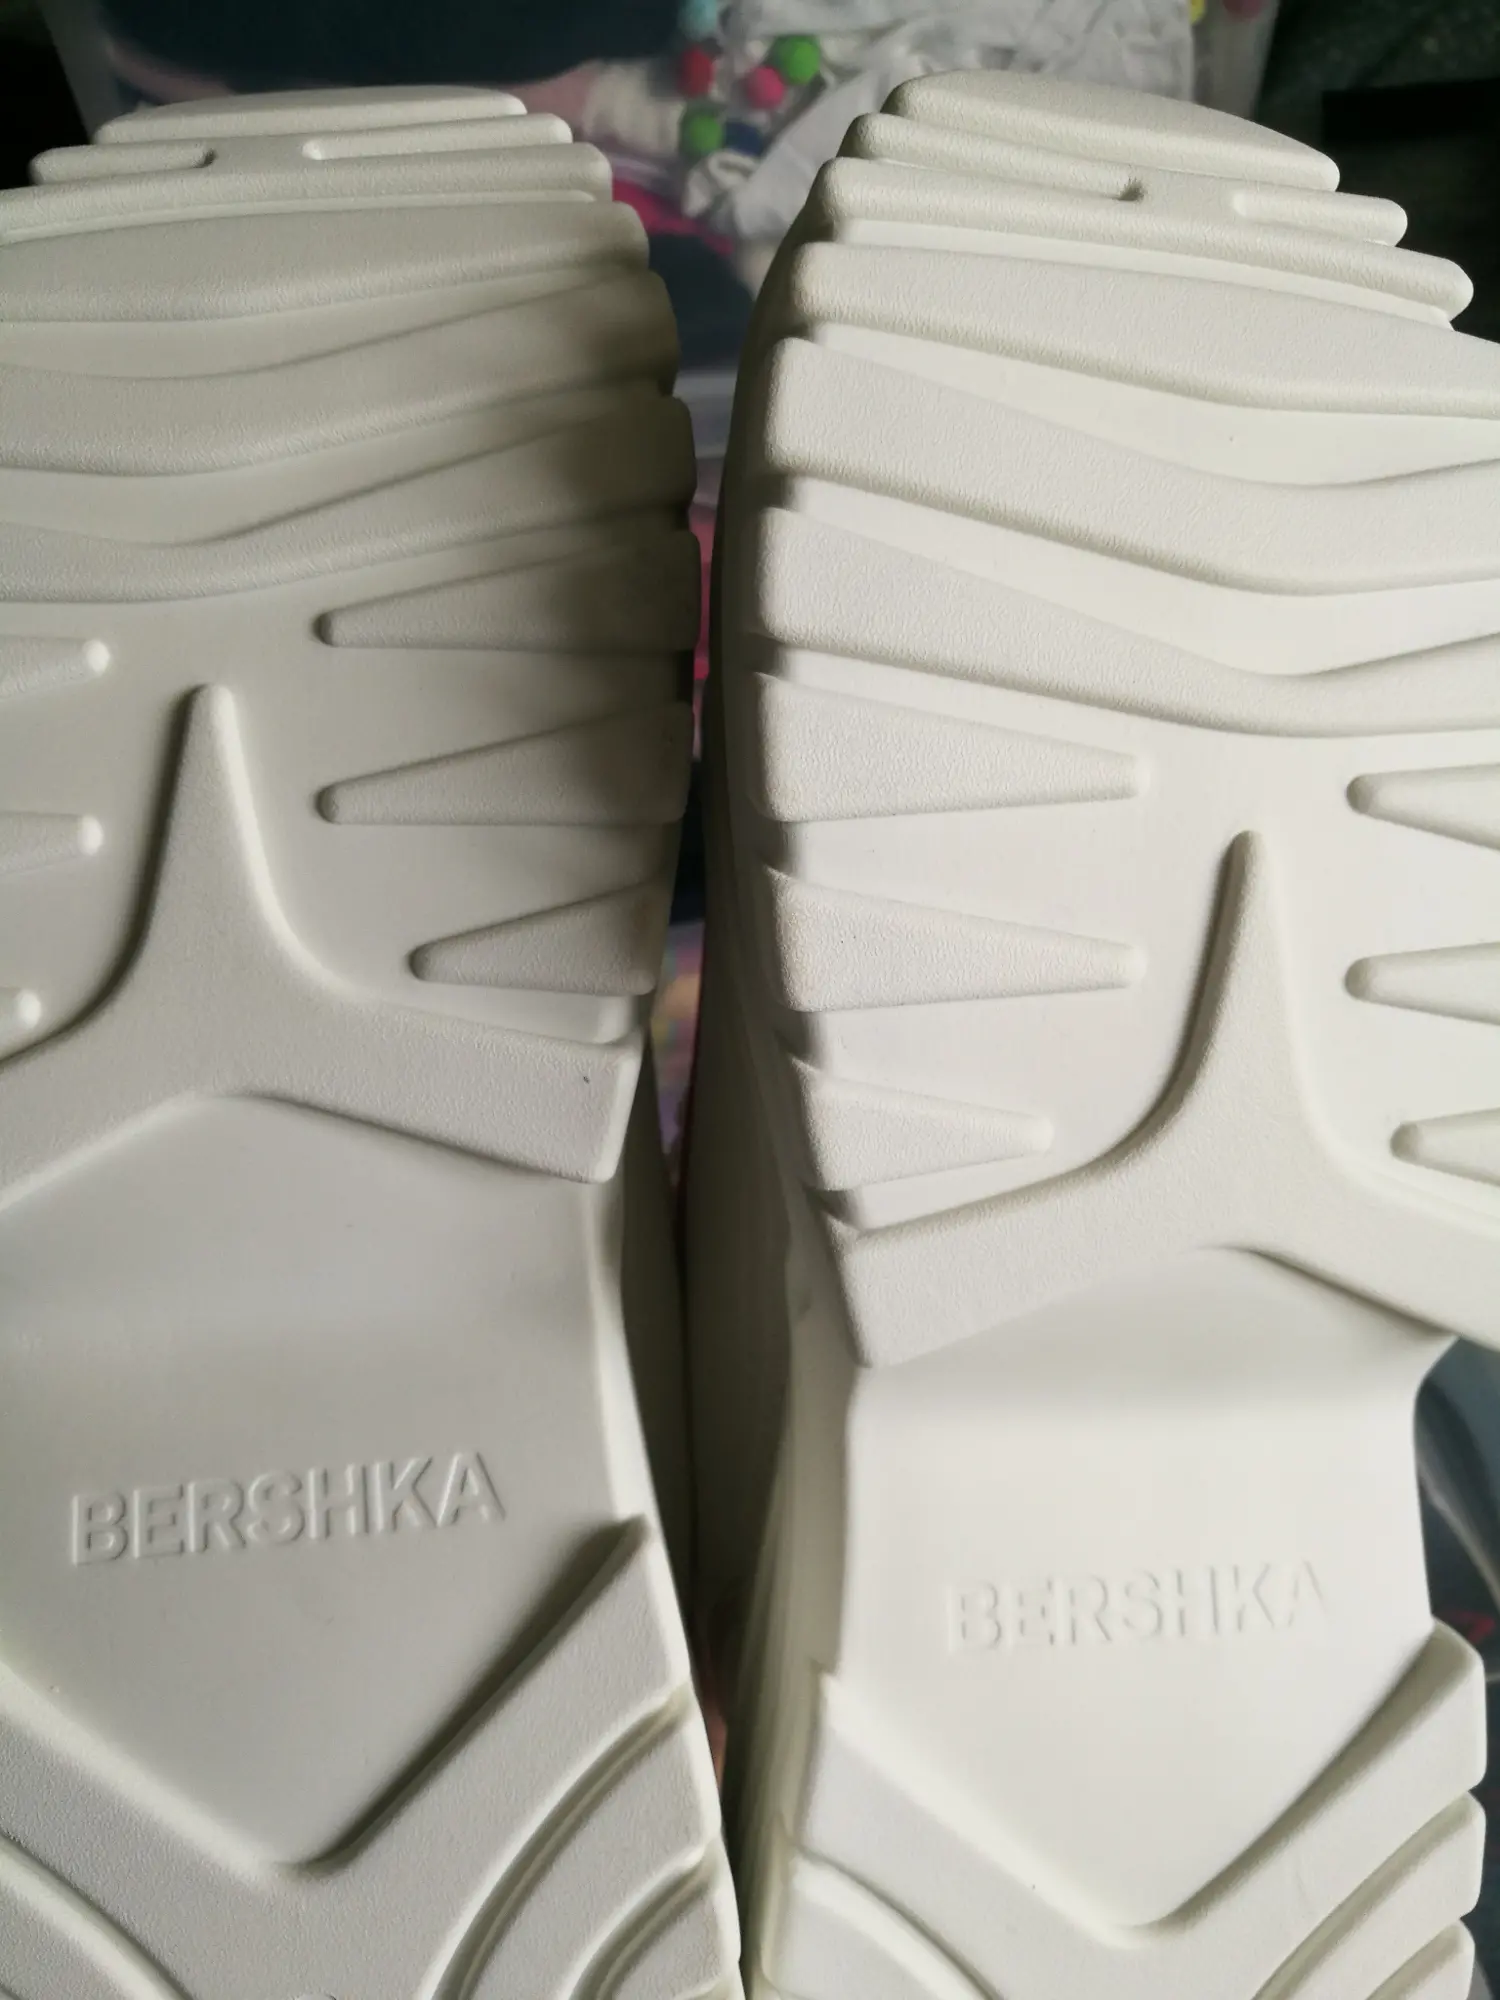 Bershka sneakers